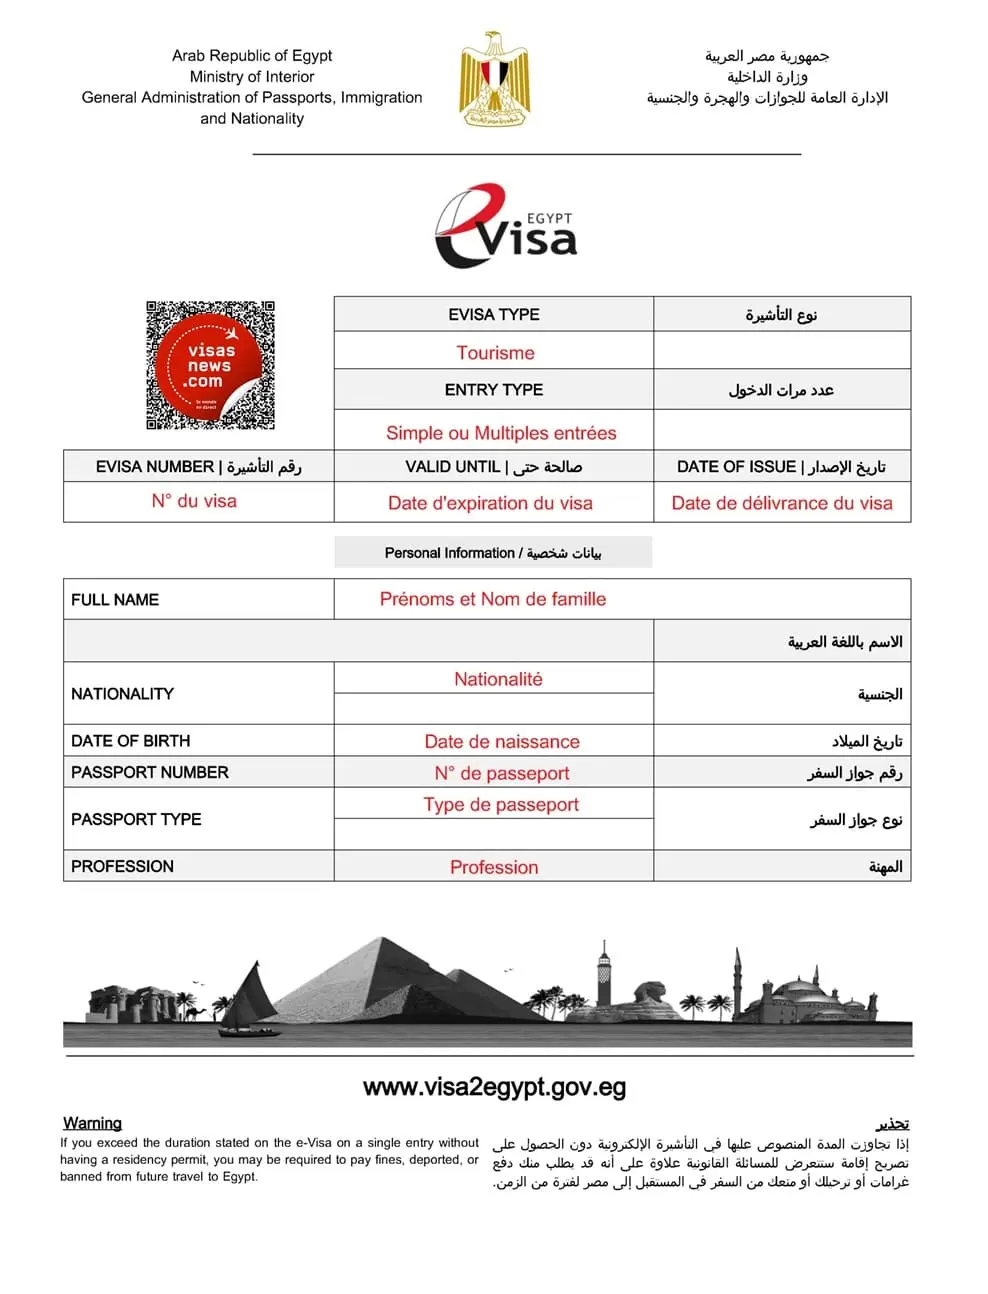 Exemple de visa électronique (e-Visa) pour l'Égypte